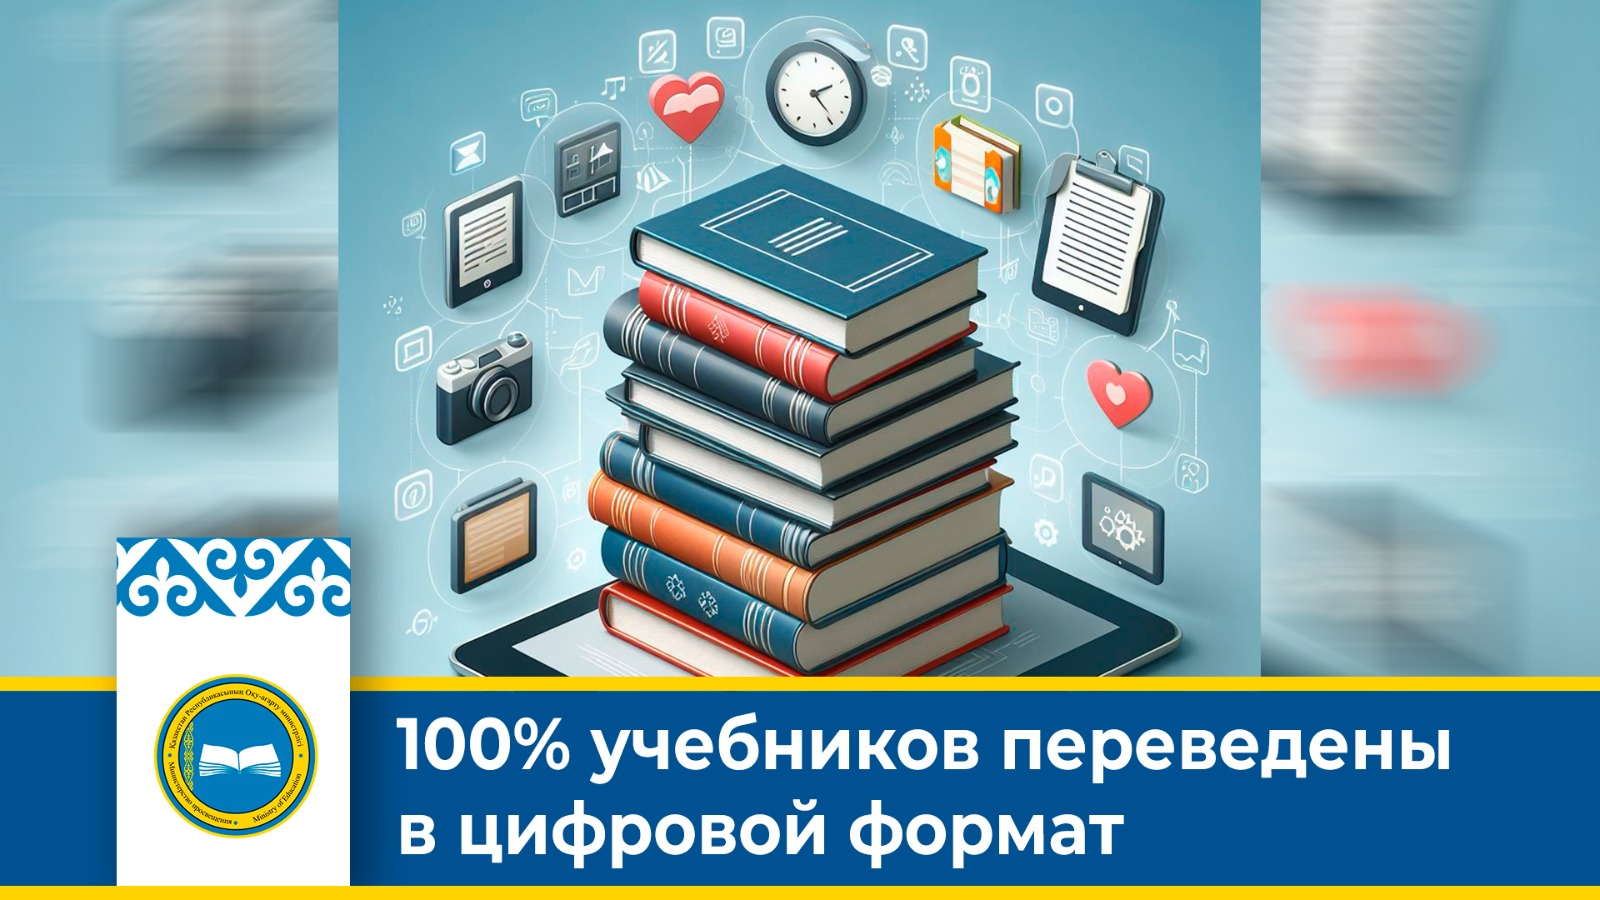 100% учебников переведены в цифровой формат